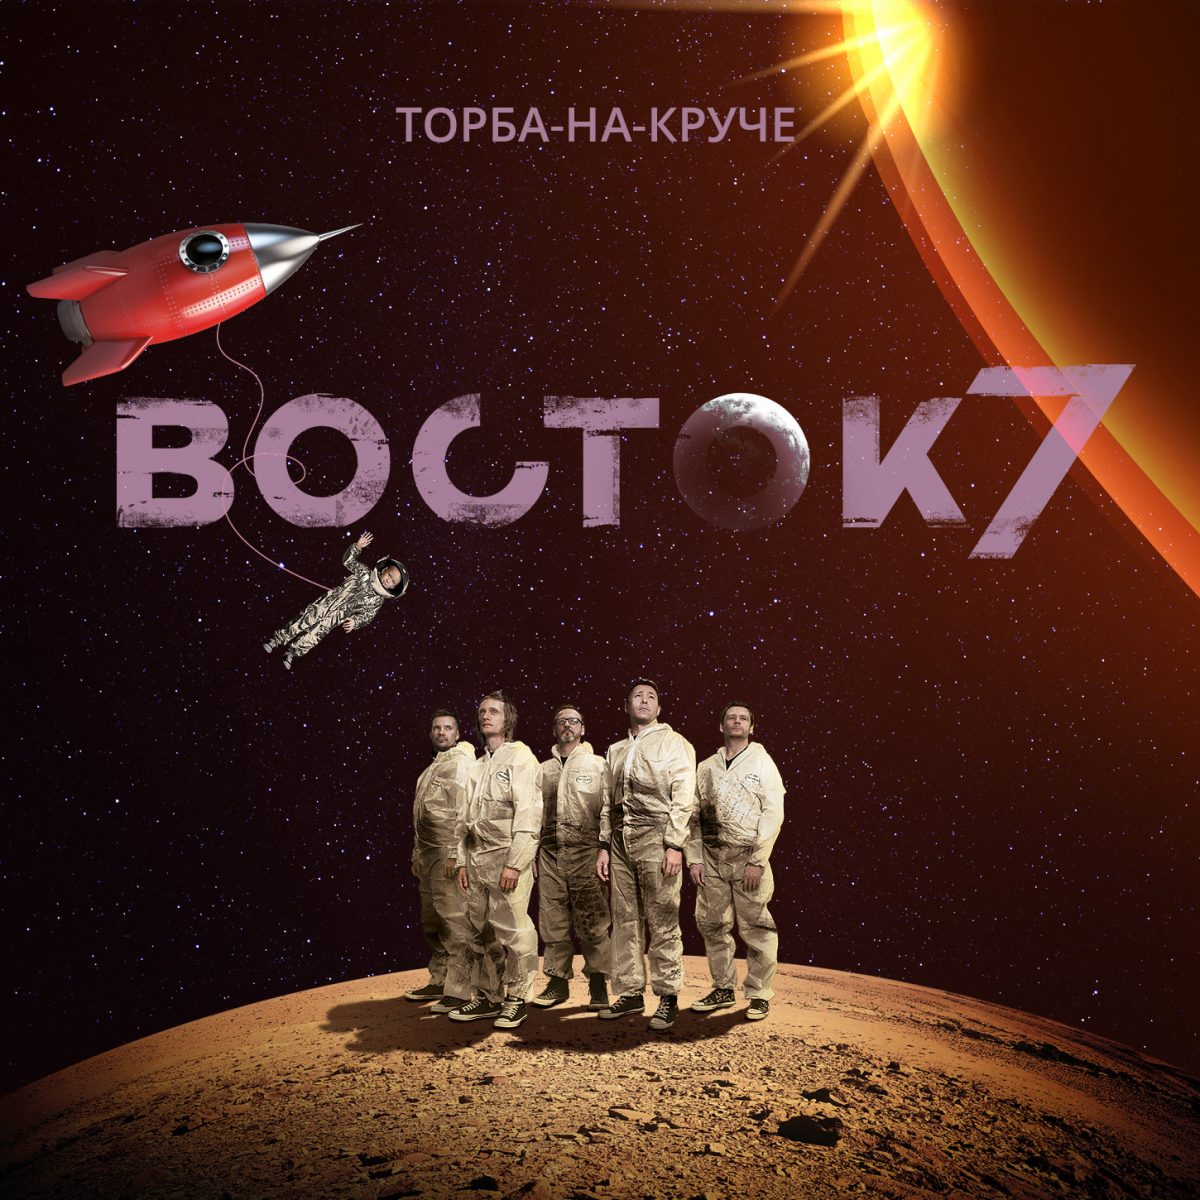 Vostok 7 album cover